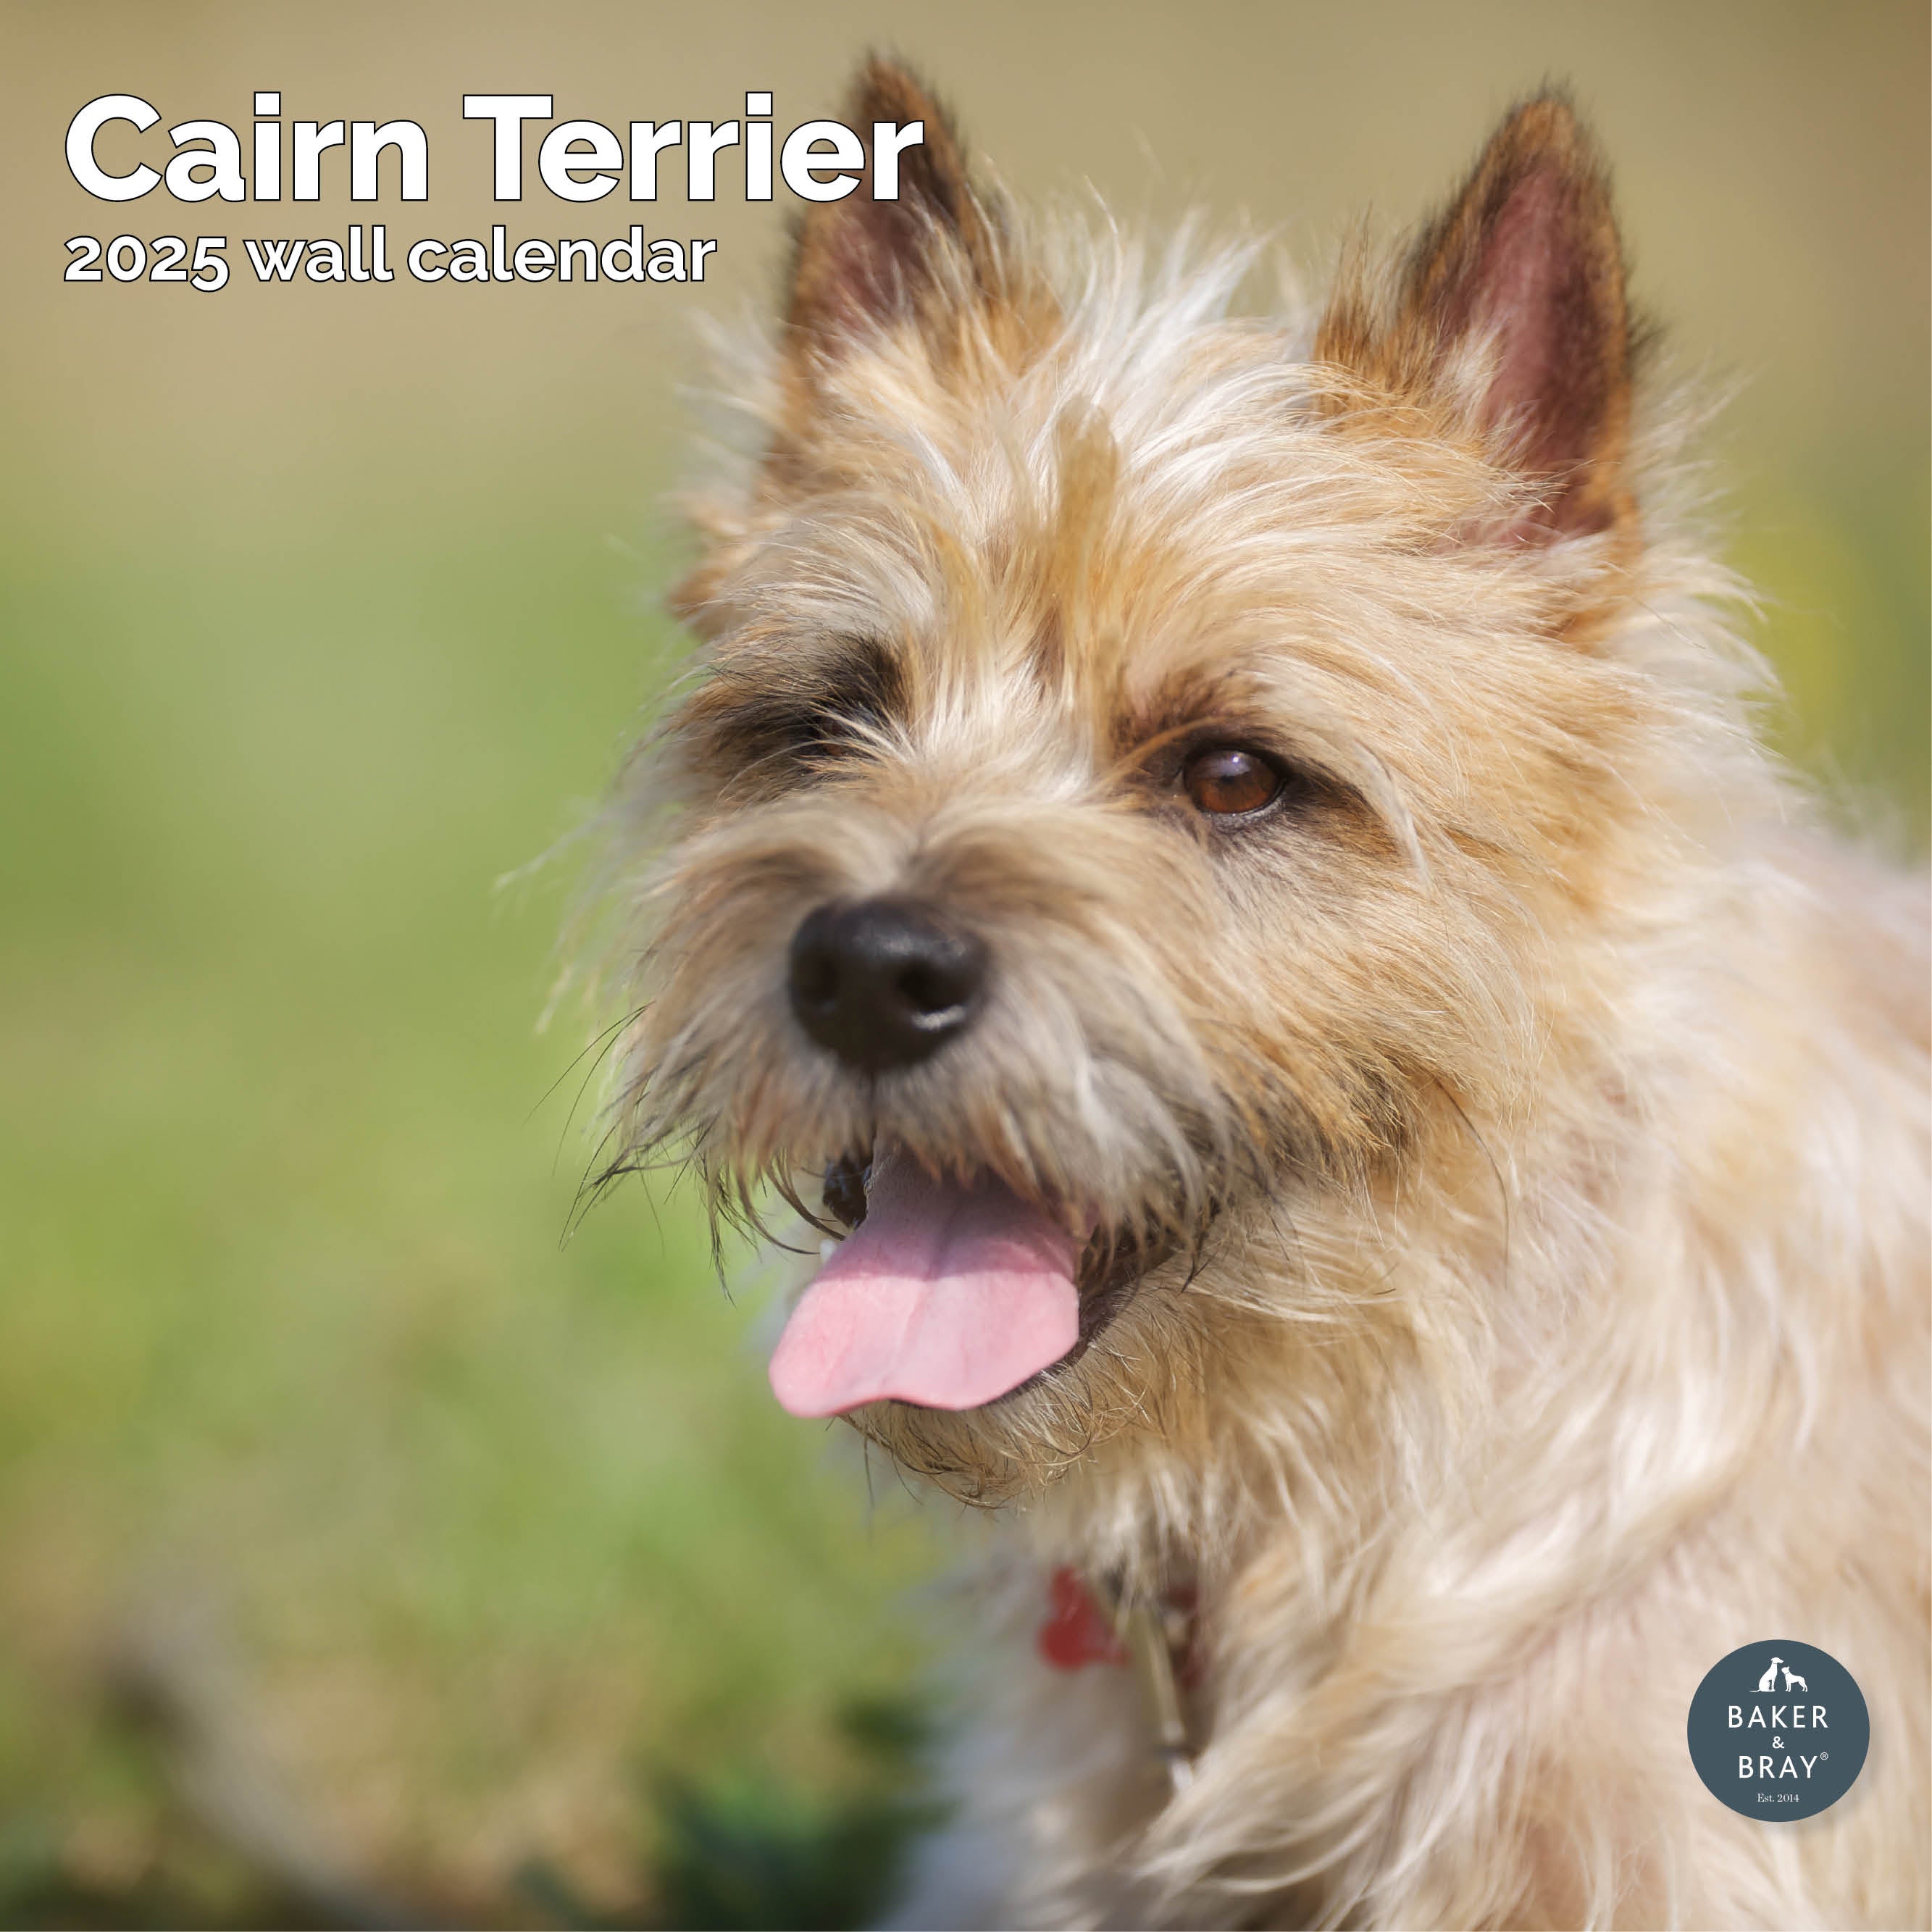 Cairn Terrier Calendar 2025